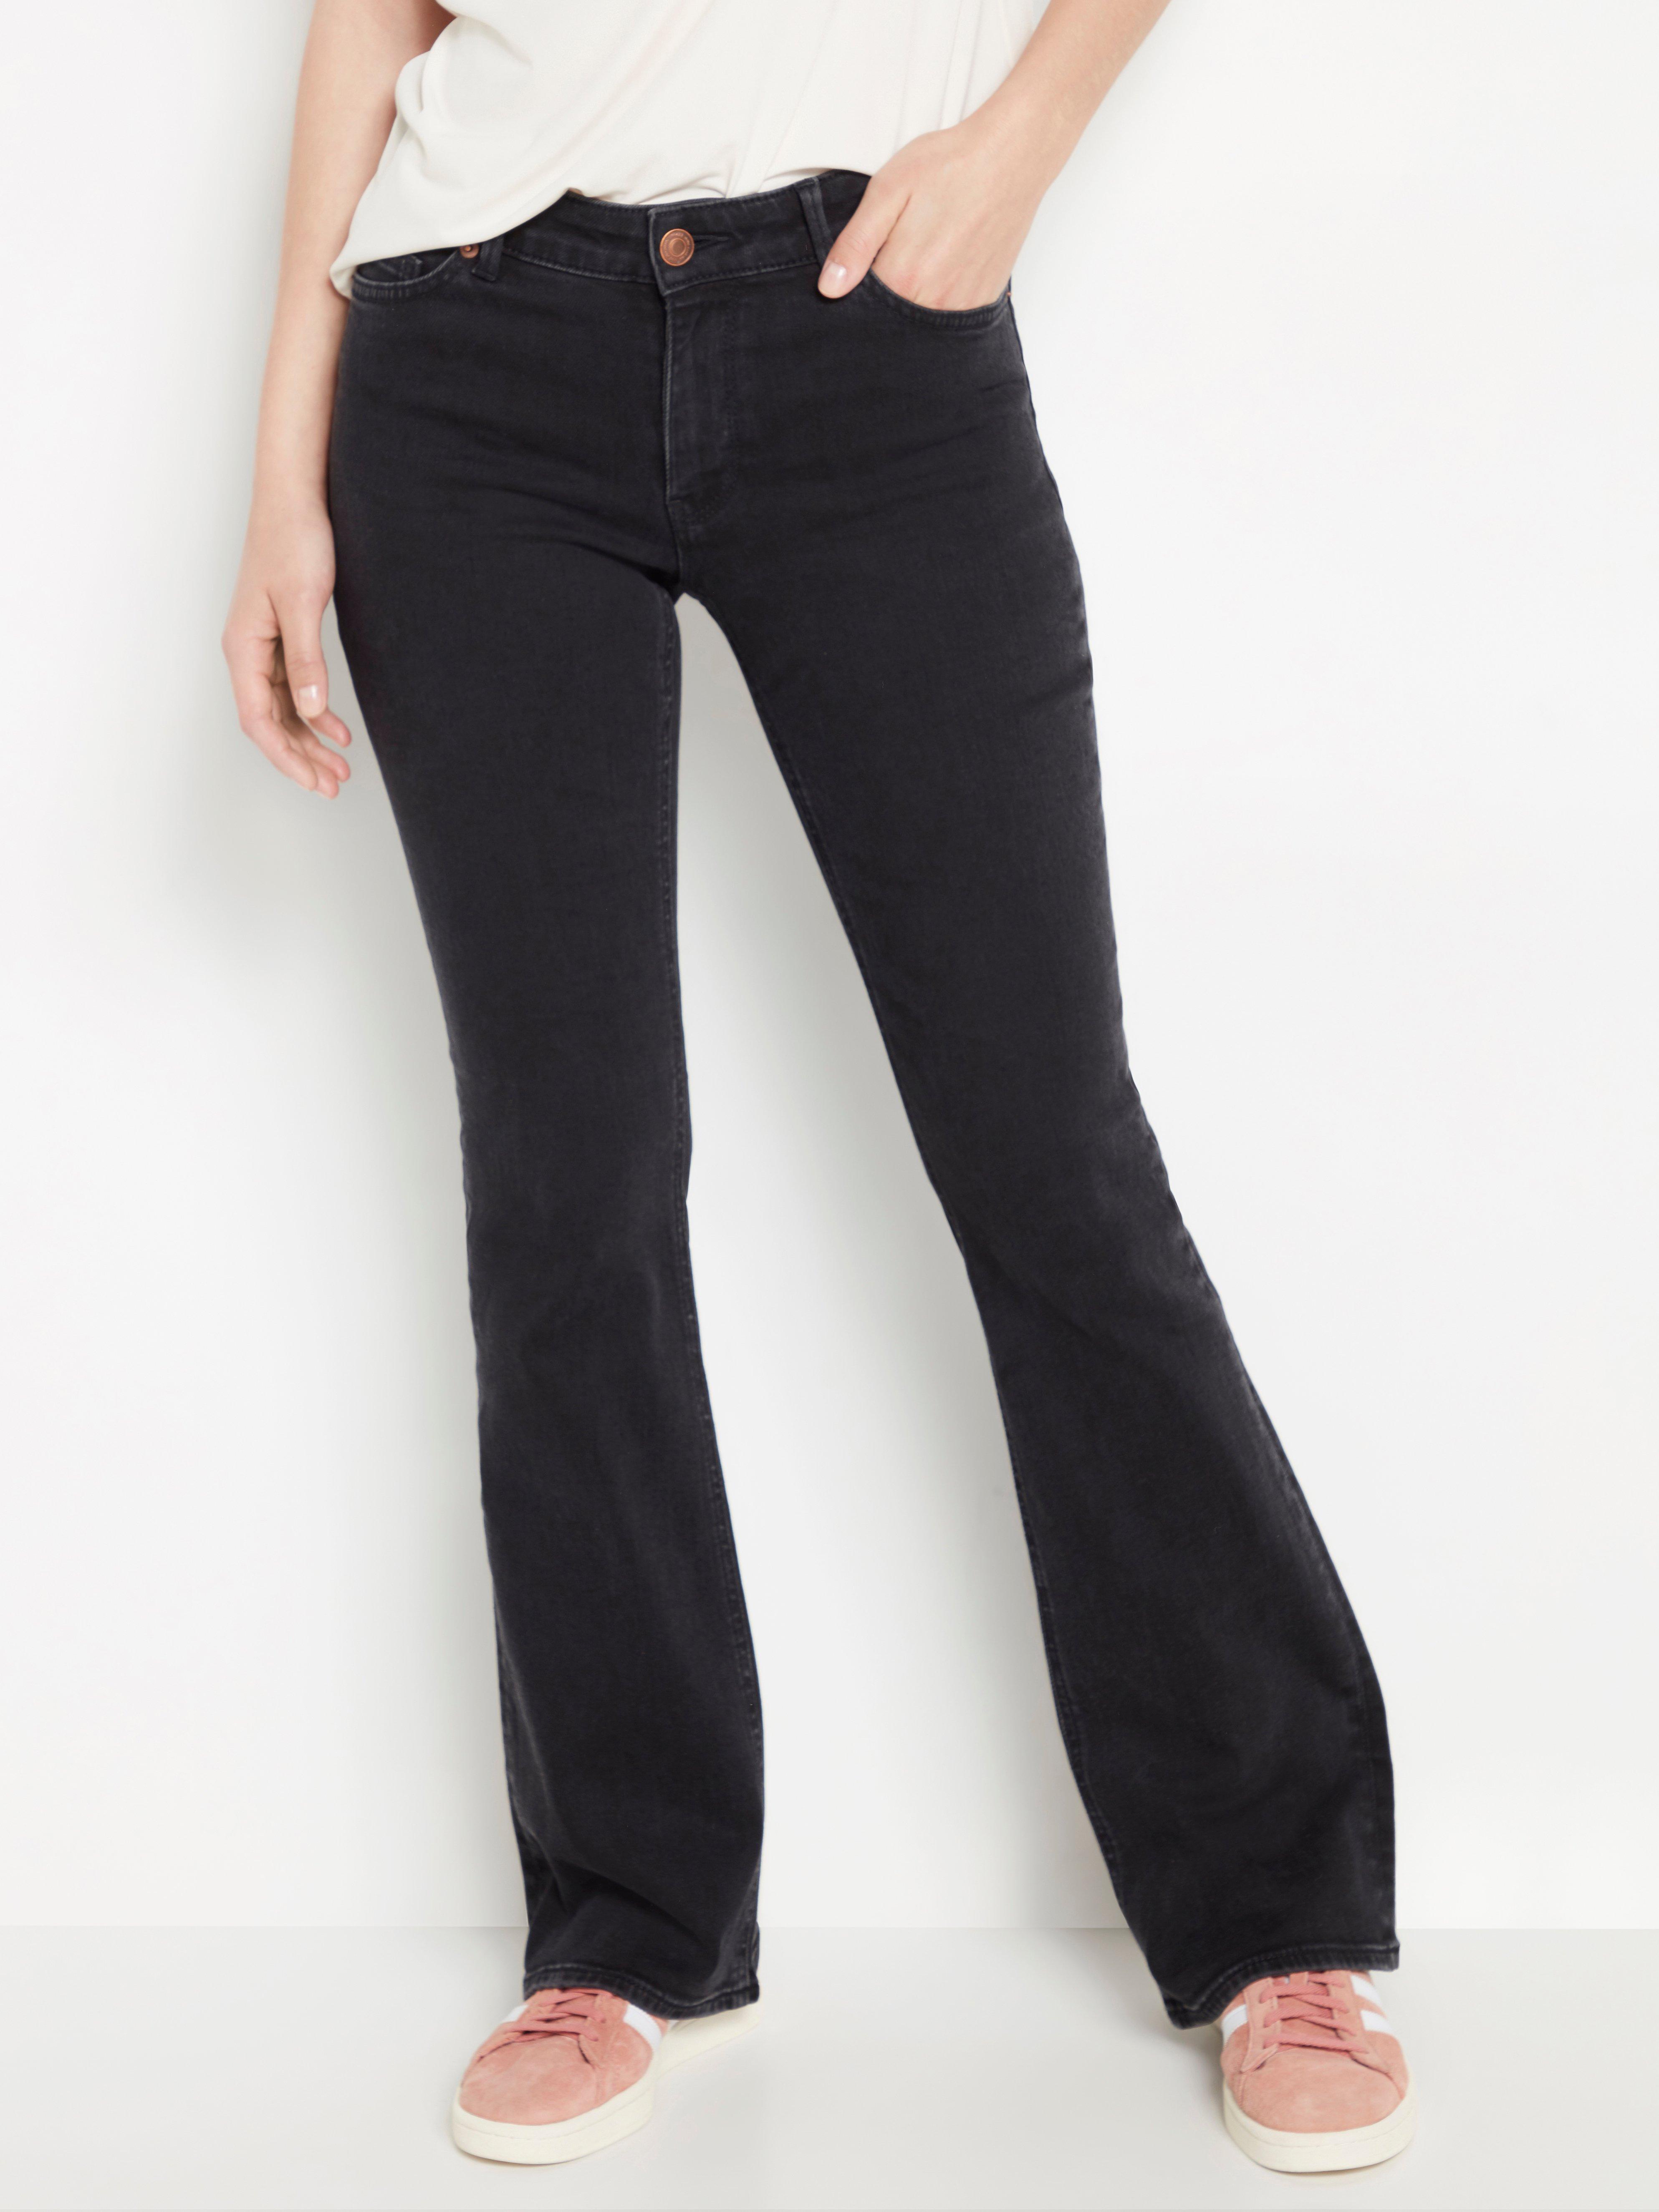 long black bootcut jeans